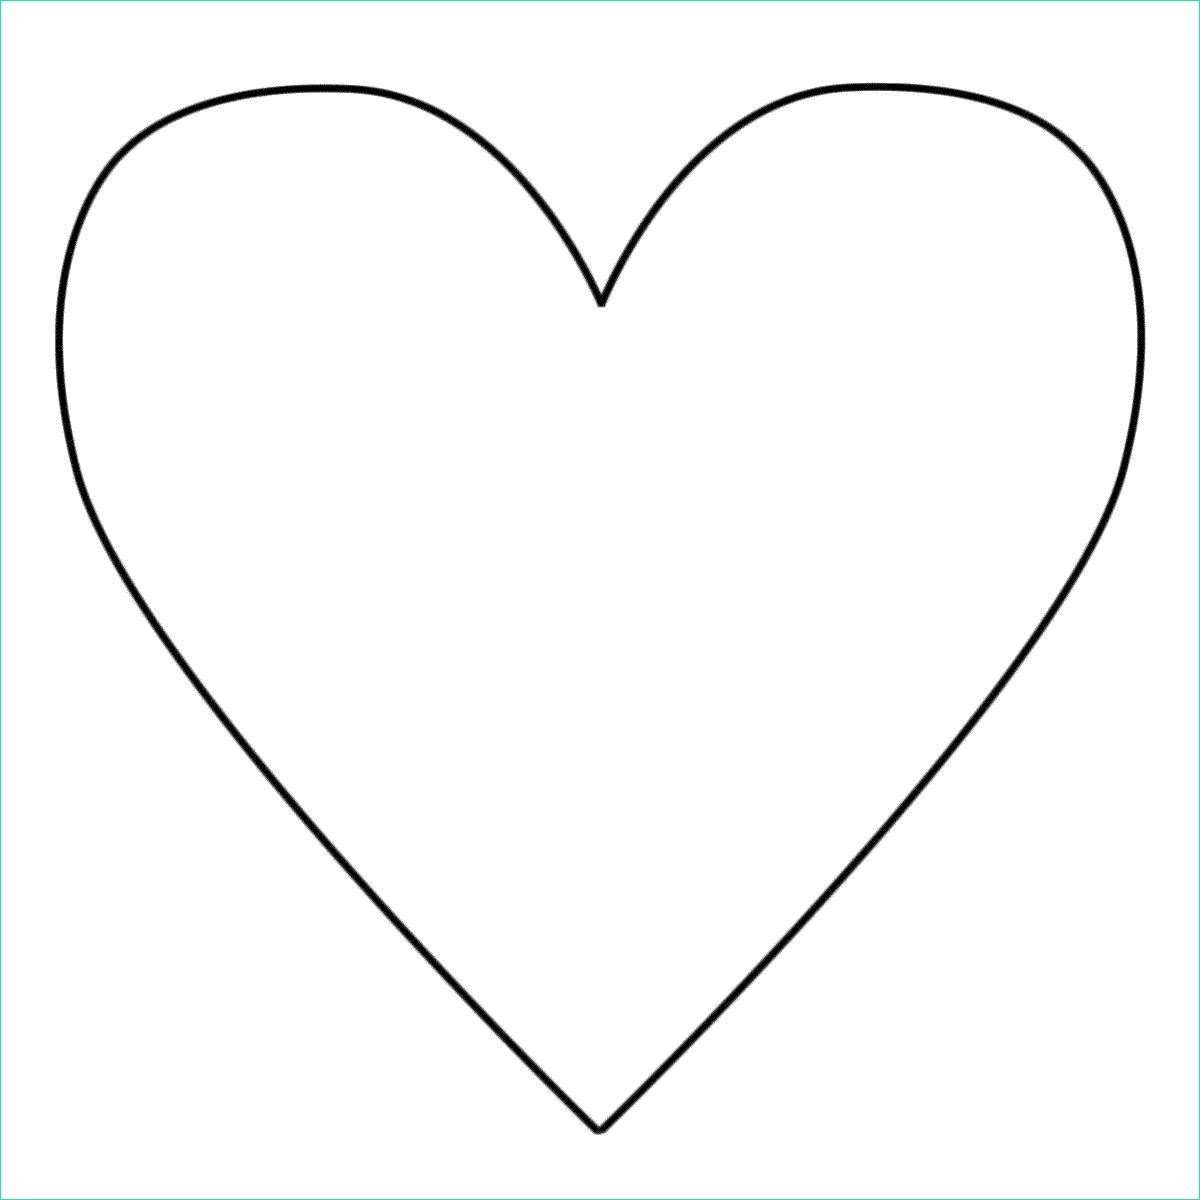 9 Élégant De Coeur À Imprimer Et À Découper Image - Coloriage : Coloriage pour Imprimer Un Coeur